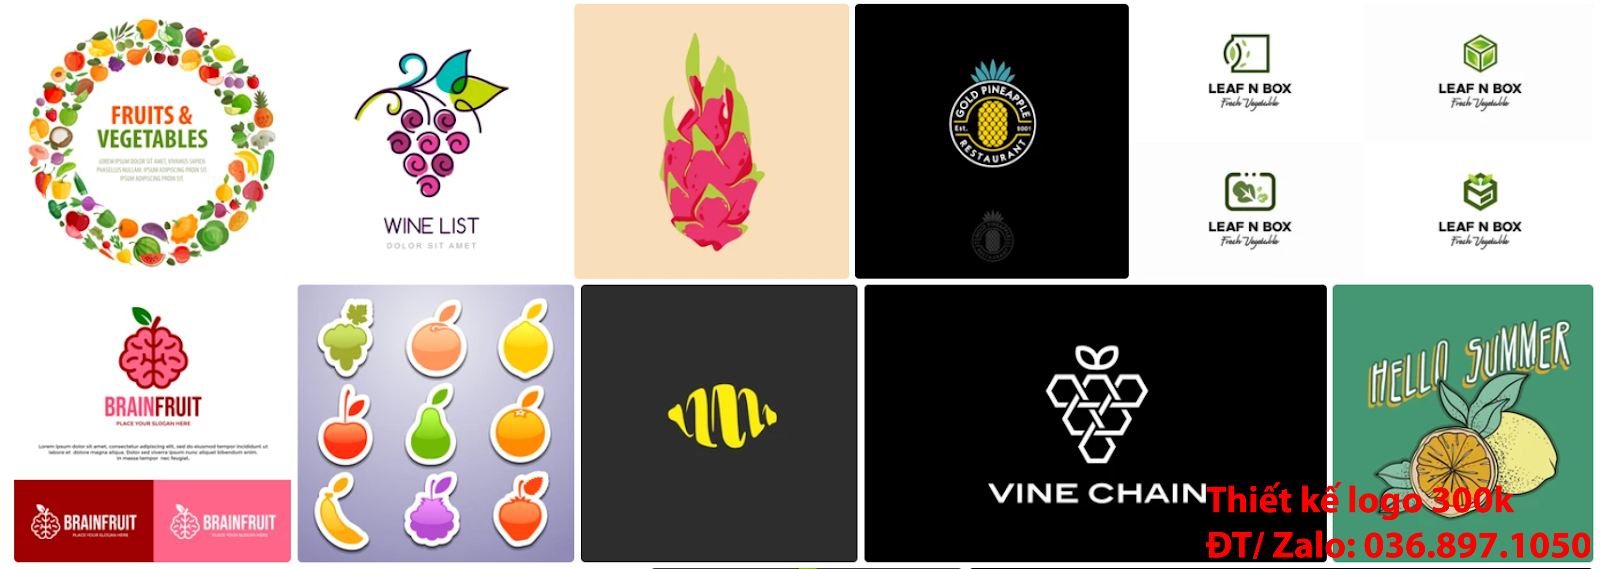 Nhận tạo Mẫu logo trái cây đẹp miễn phí online cho các công ty tại khu vực TpHCM chuyên nghiệp uy tín nhất